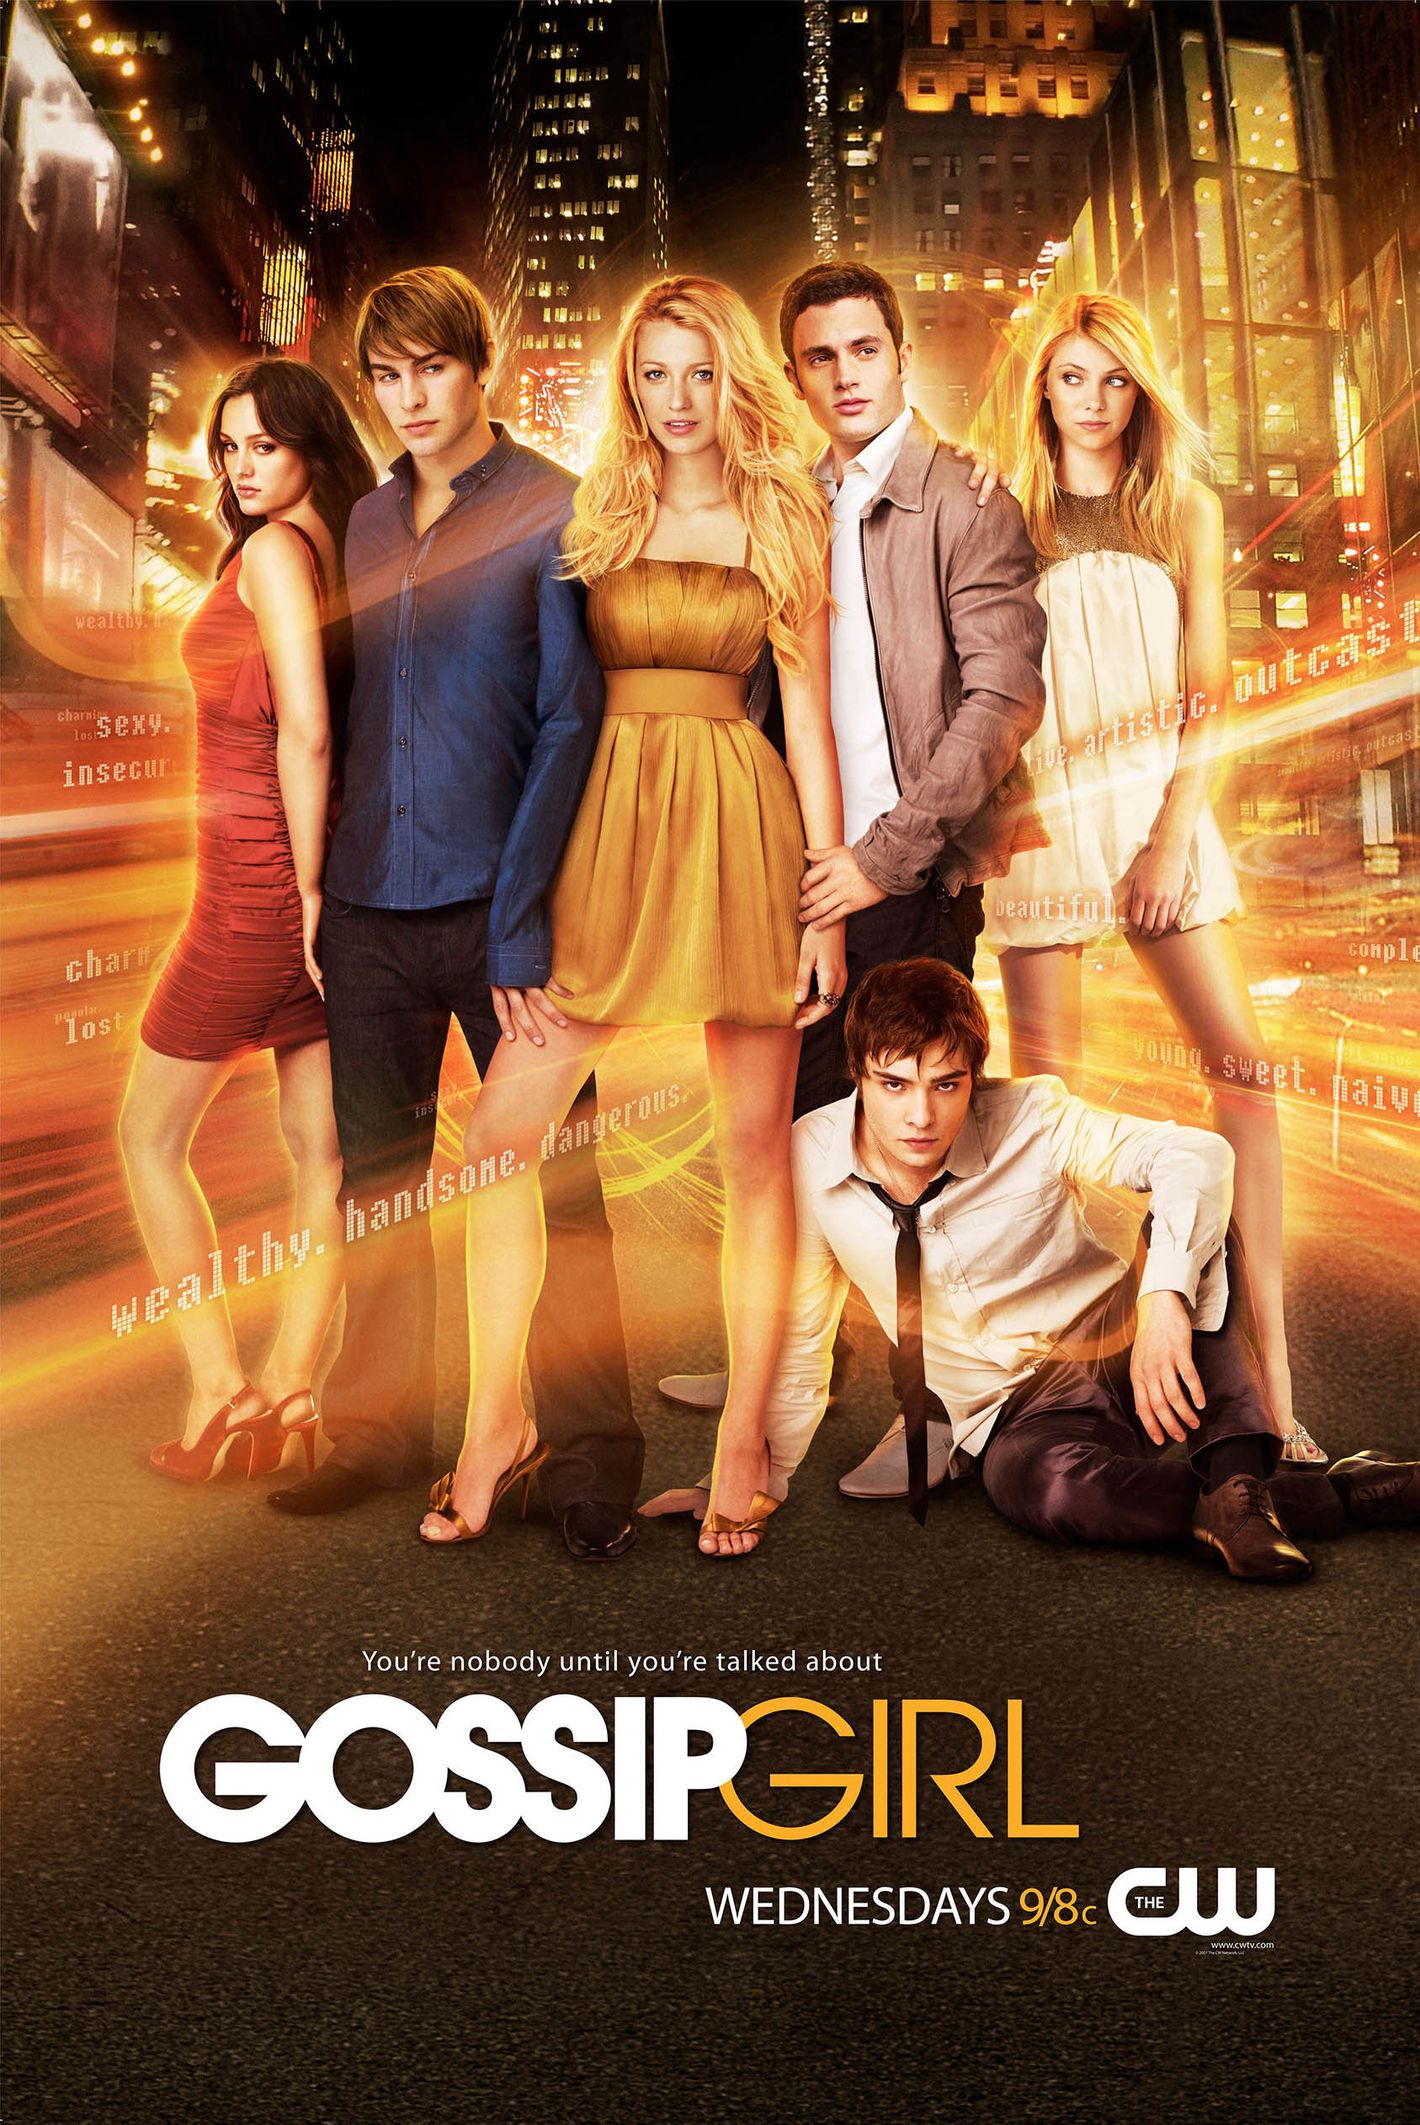 Gossip Girl brings back original characters in season one finale